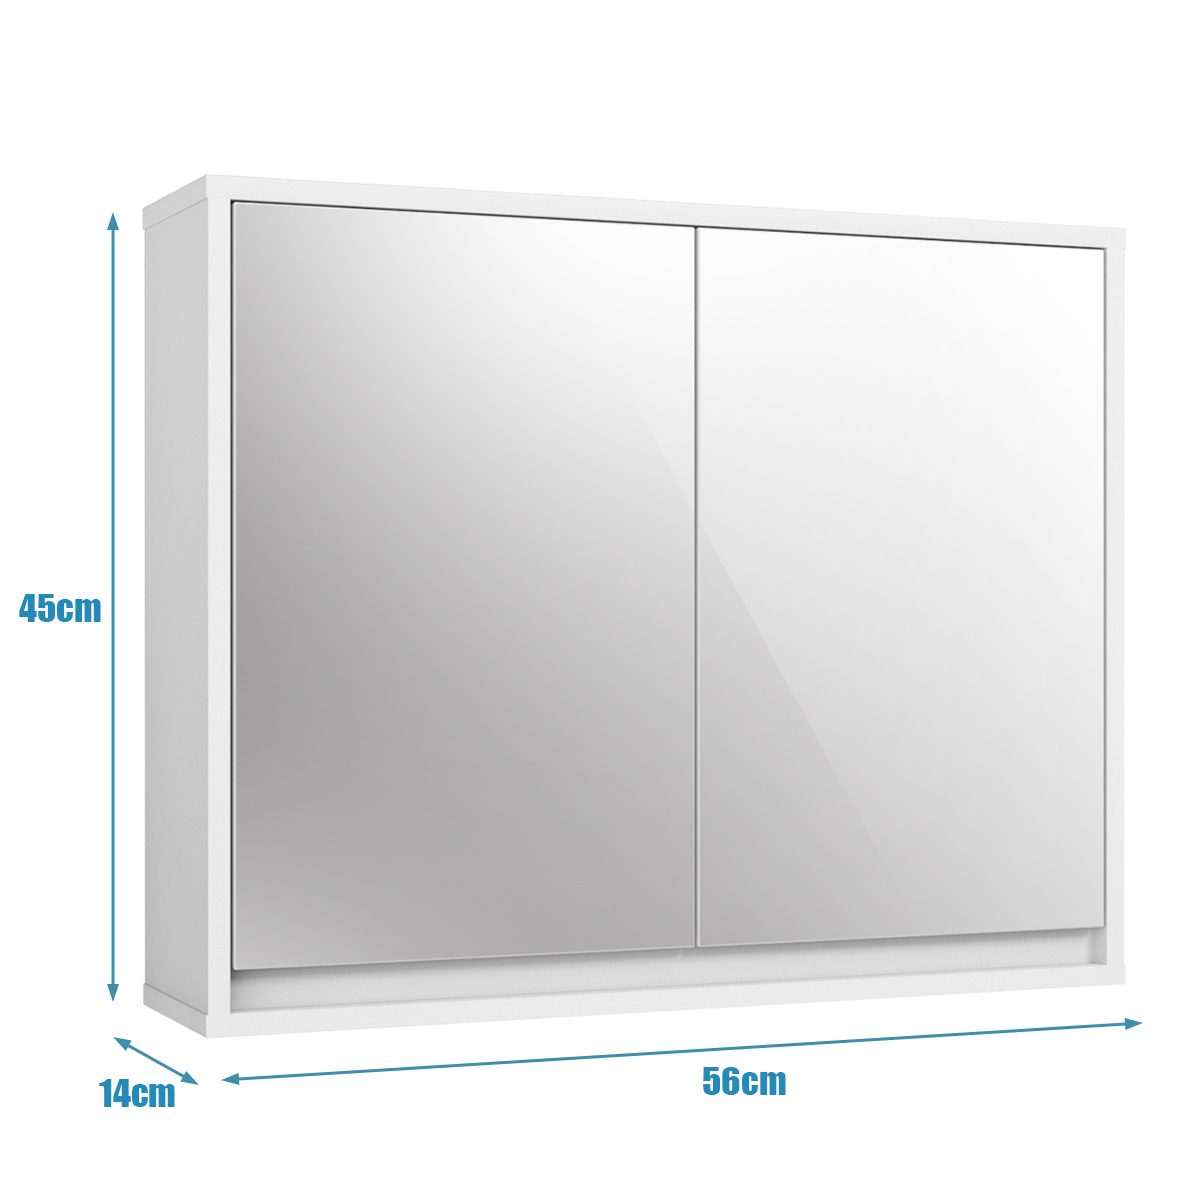 Double_Mirrored_Door_Cabinet_size-4.jpg